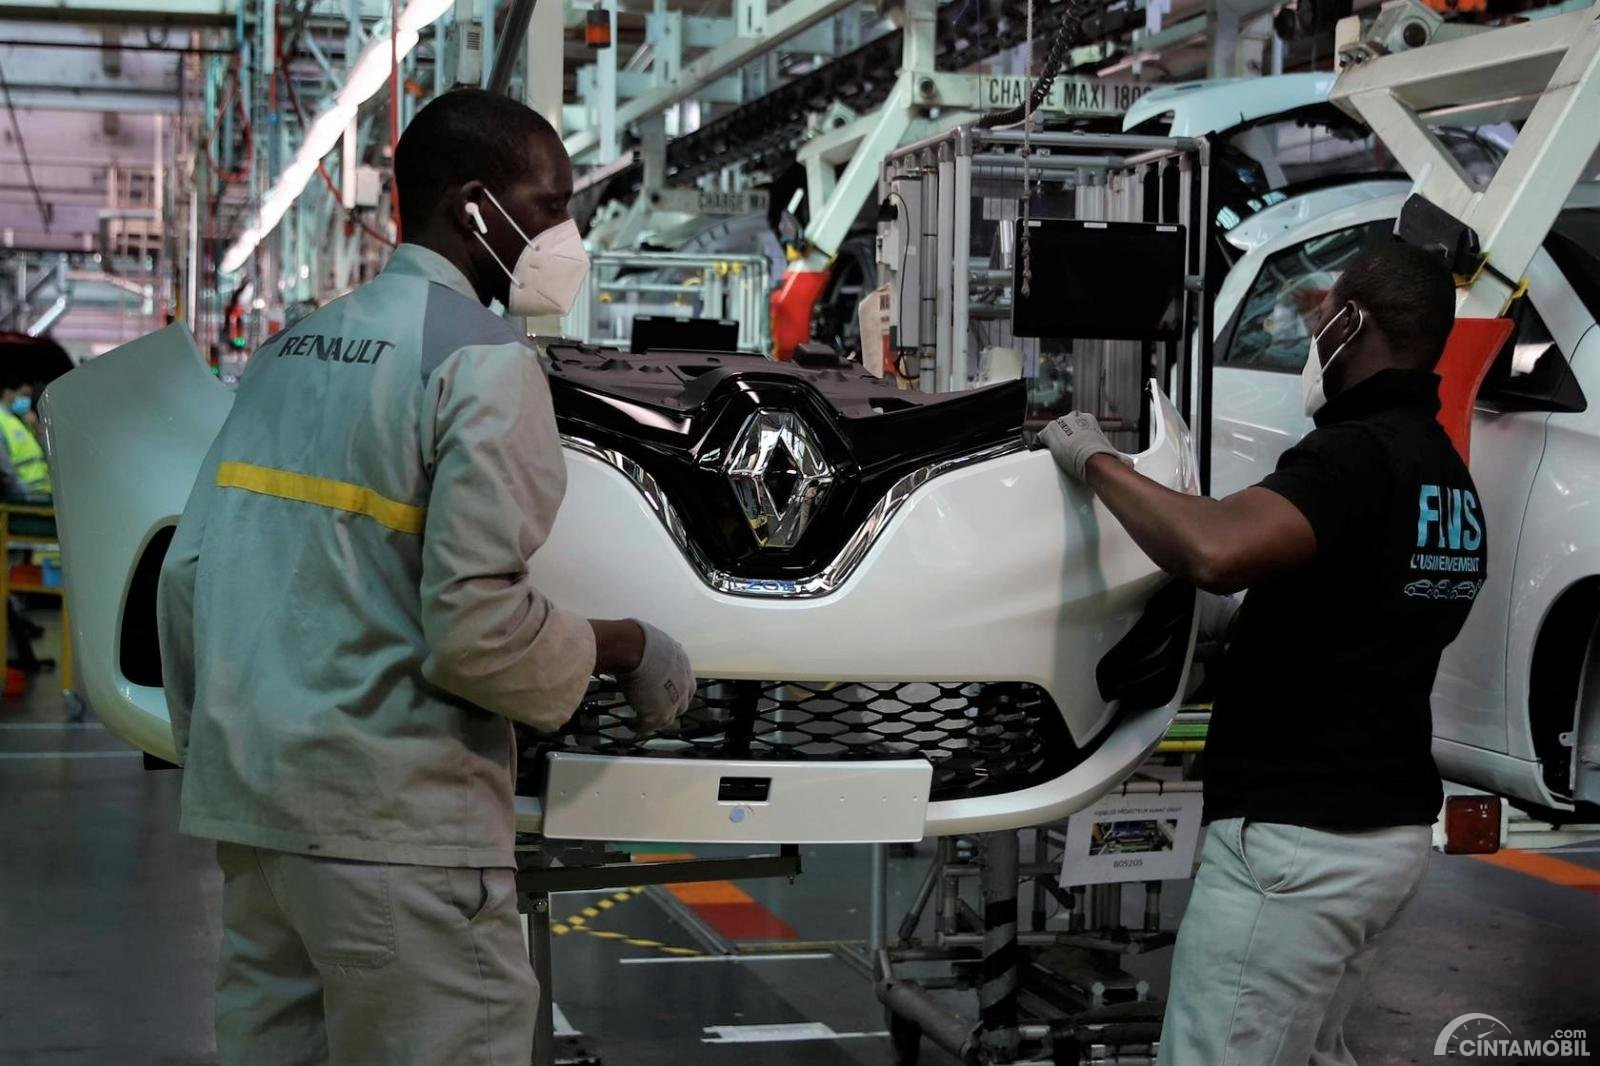 Dampak dari Virus Corona, Produsen Mobil Prancis Renault PHK 15.000 Karwayan di Seluruh Dunia